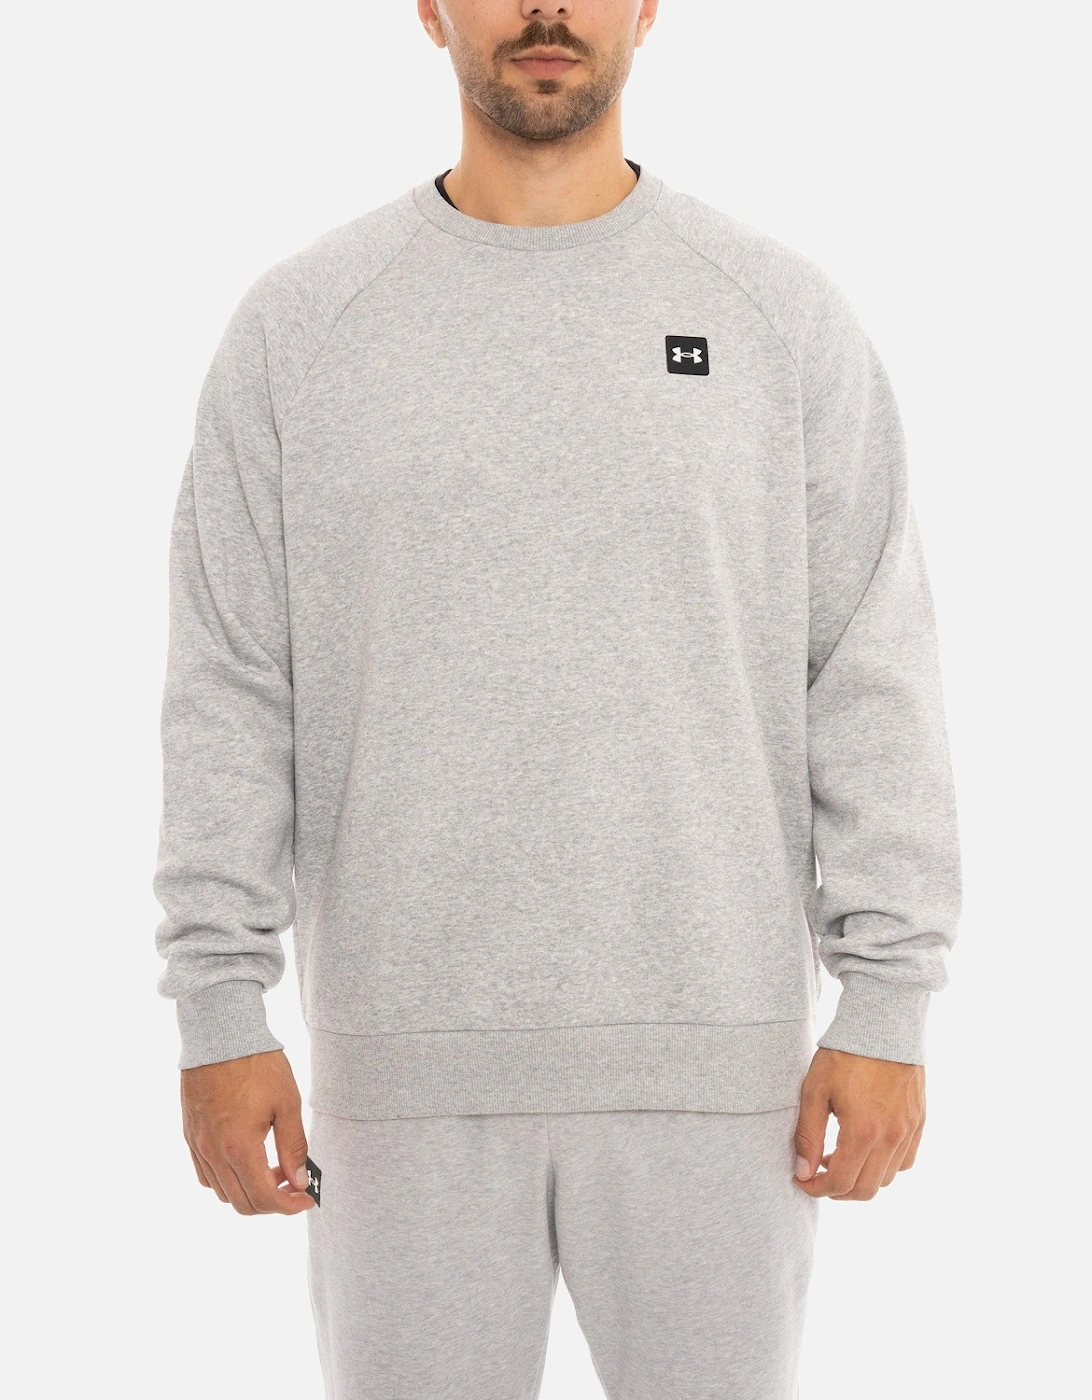 Mens Fleece Crew Sweatshirt (Light Grey), 6 of 5